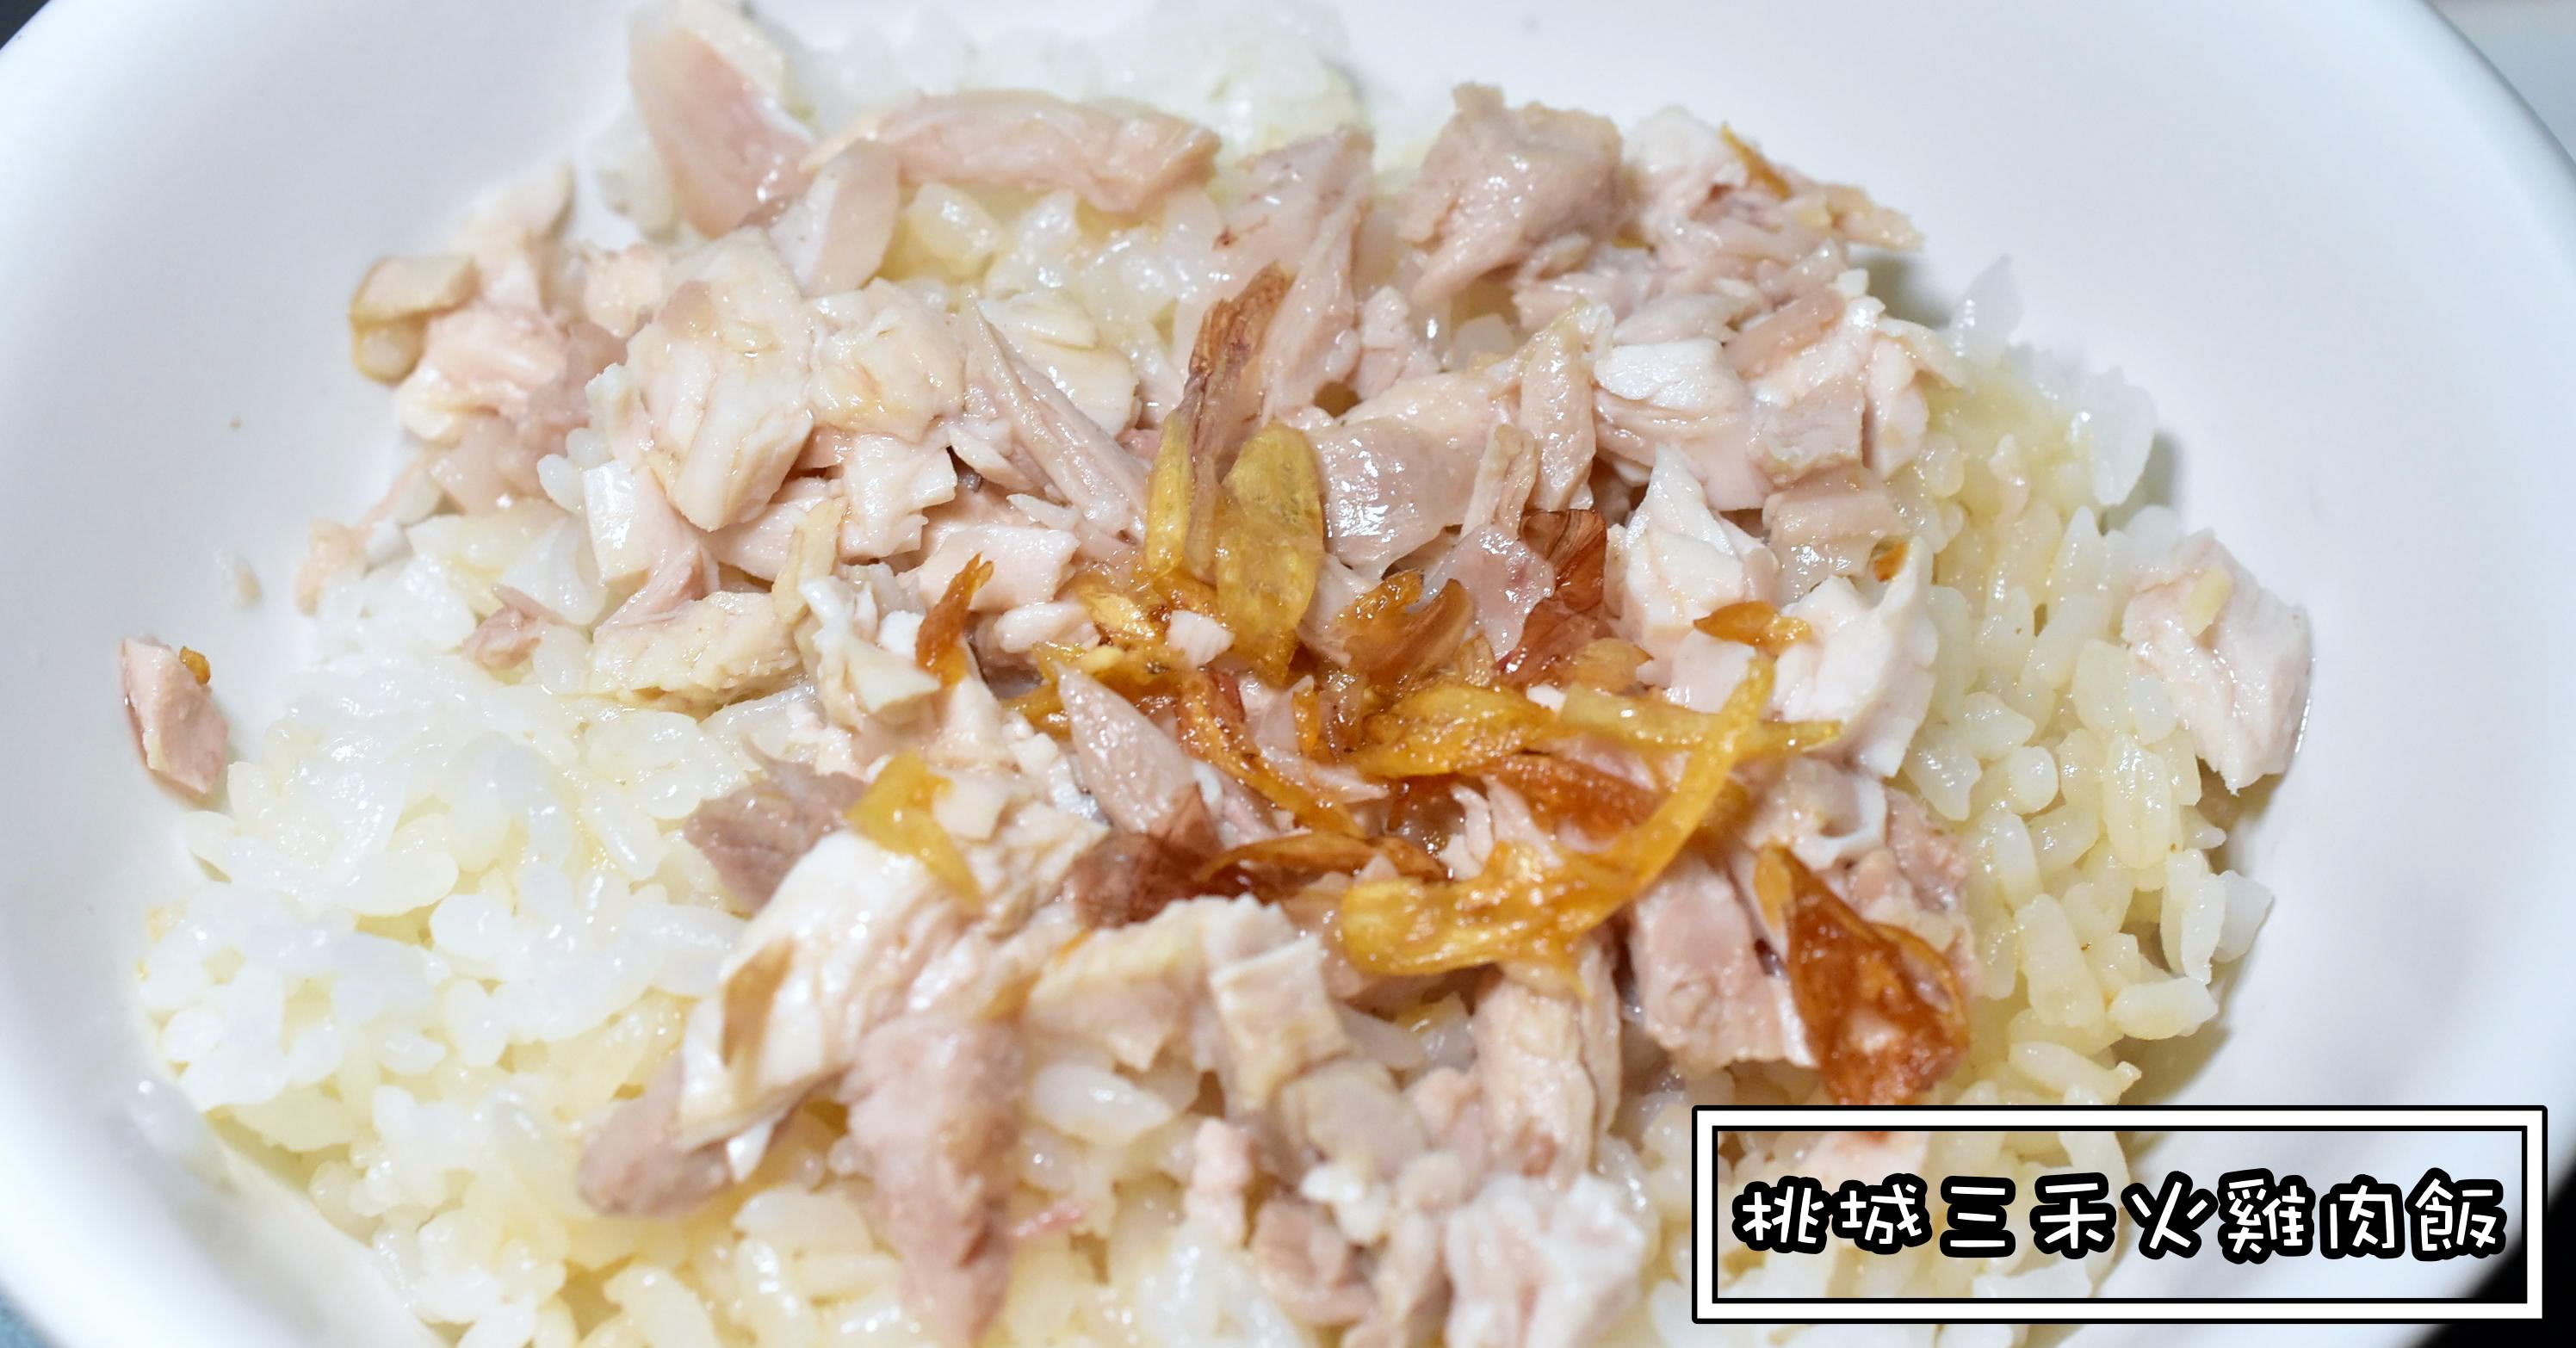 嘉義雞肉飯推薦|桃城三禾火雞肉飯 盲測第二名的嘉義雞肉飯 (菜單價錢)